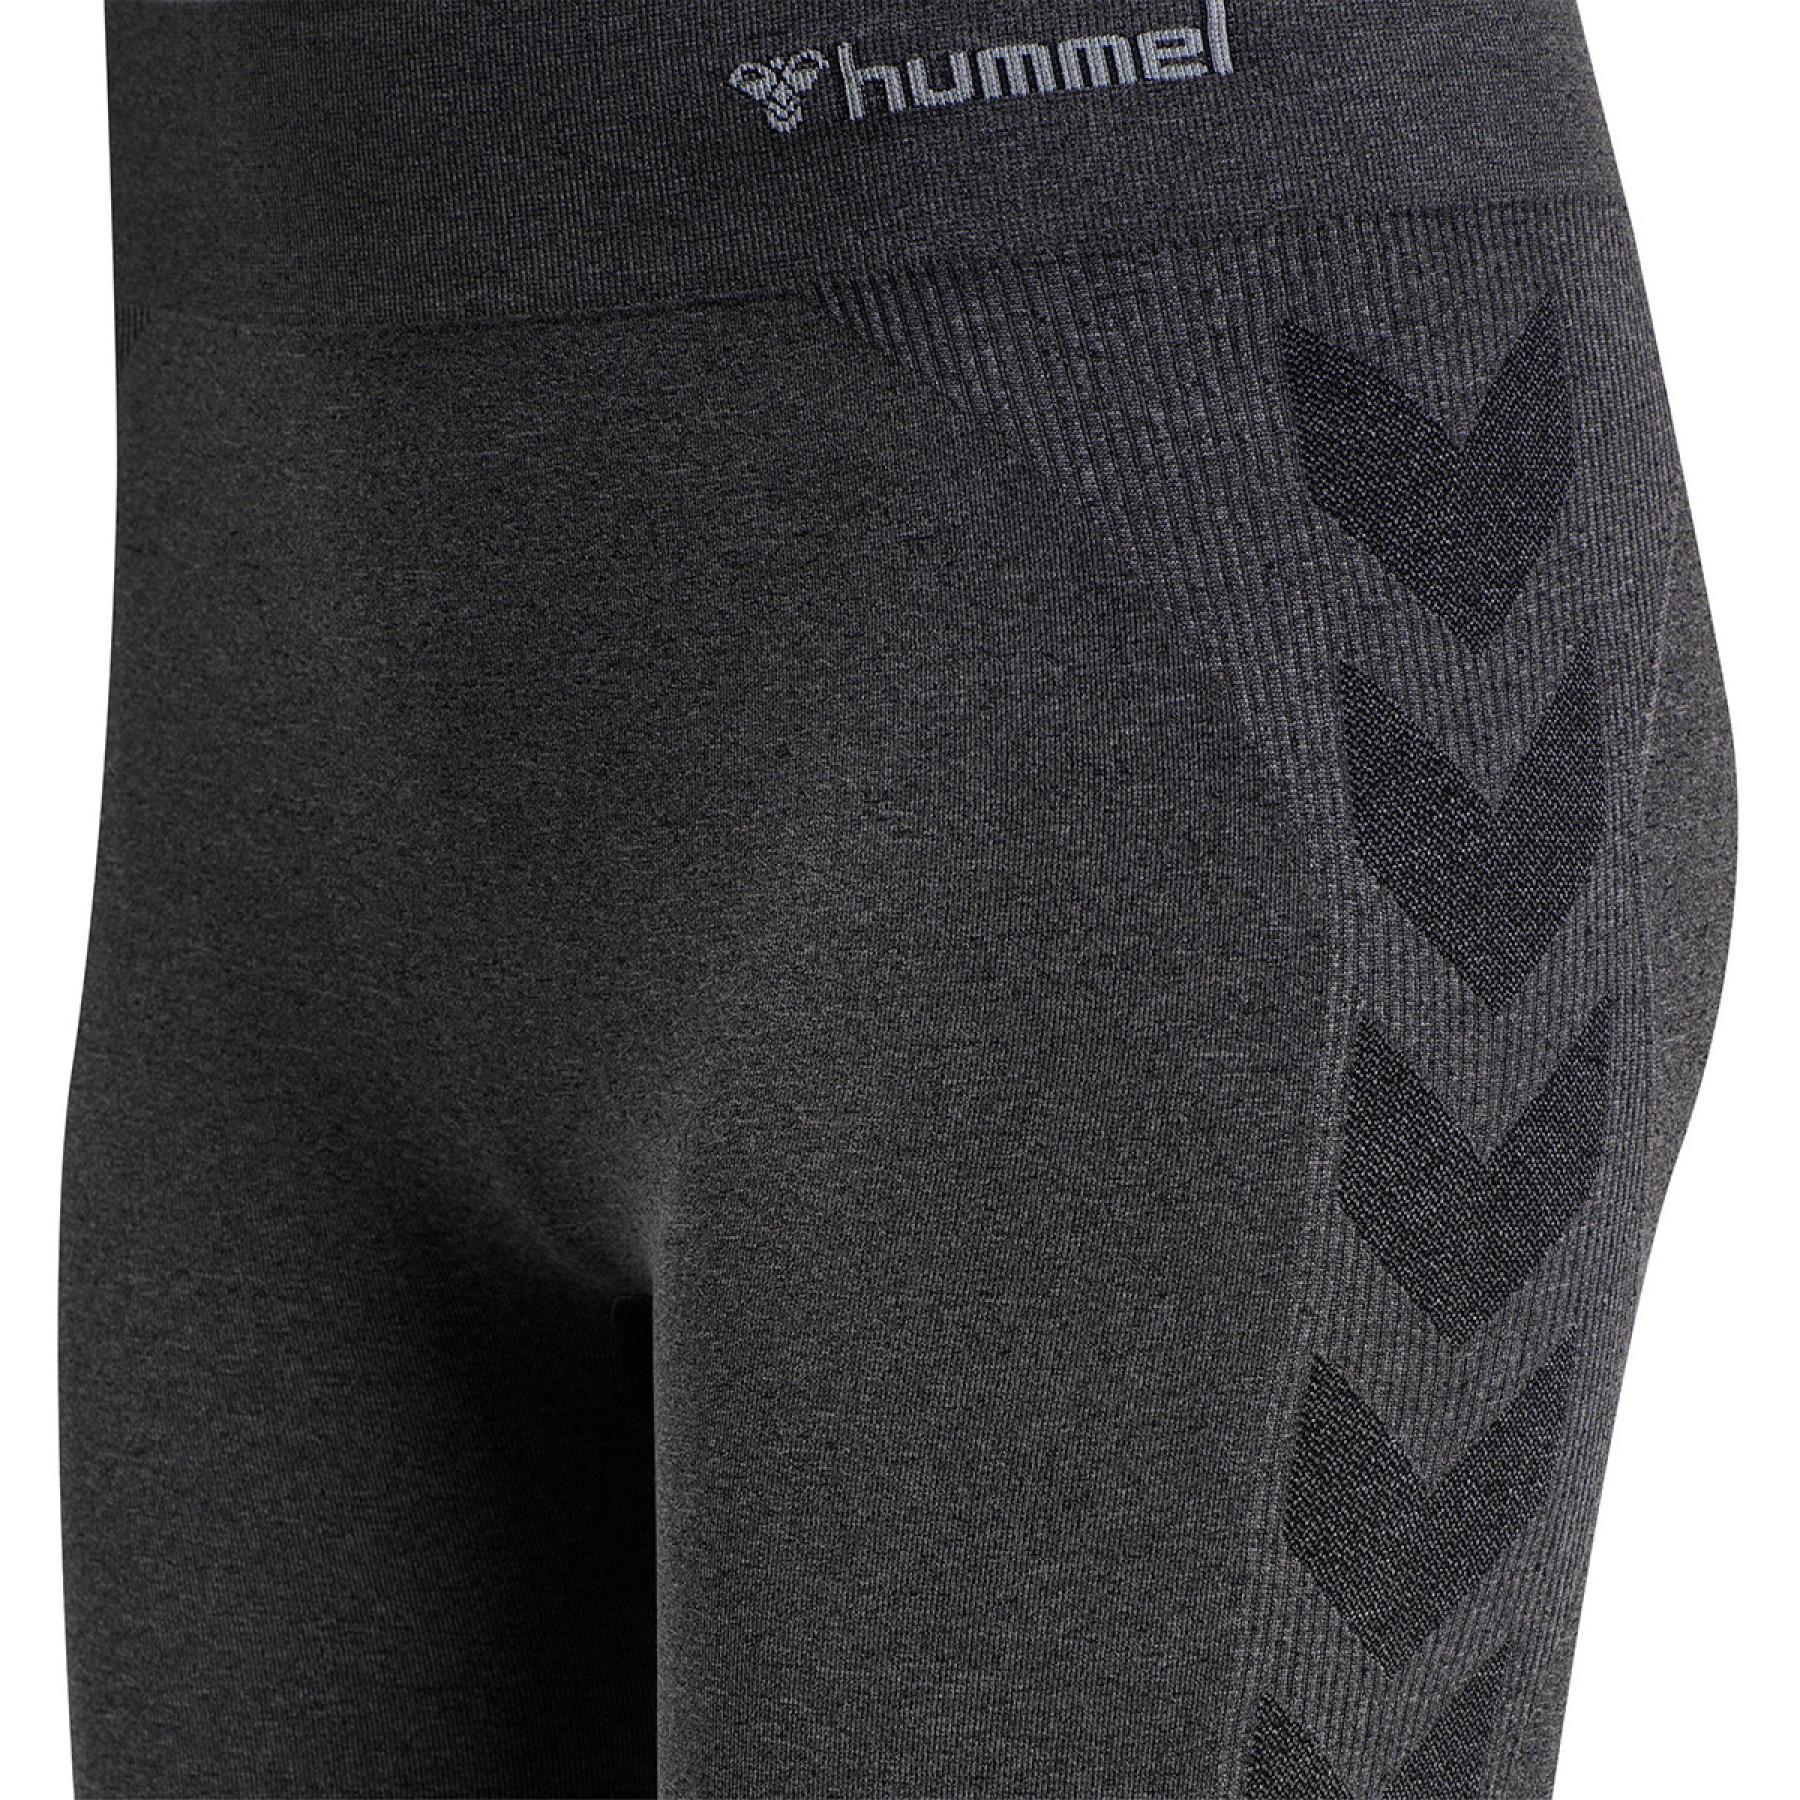 Women's shorts Hummel hmlci cycling